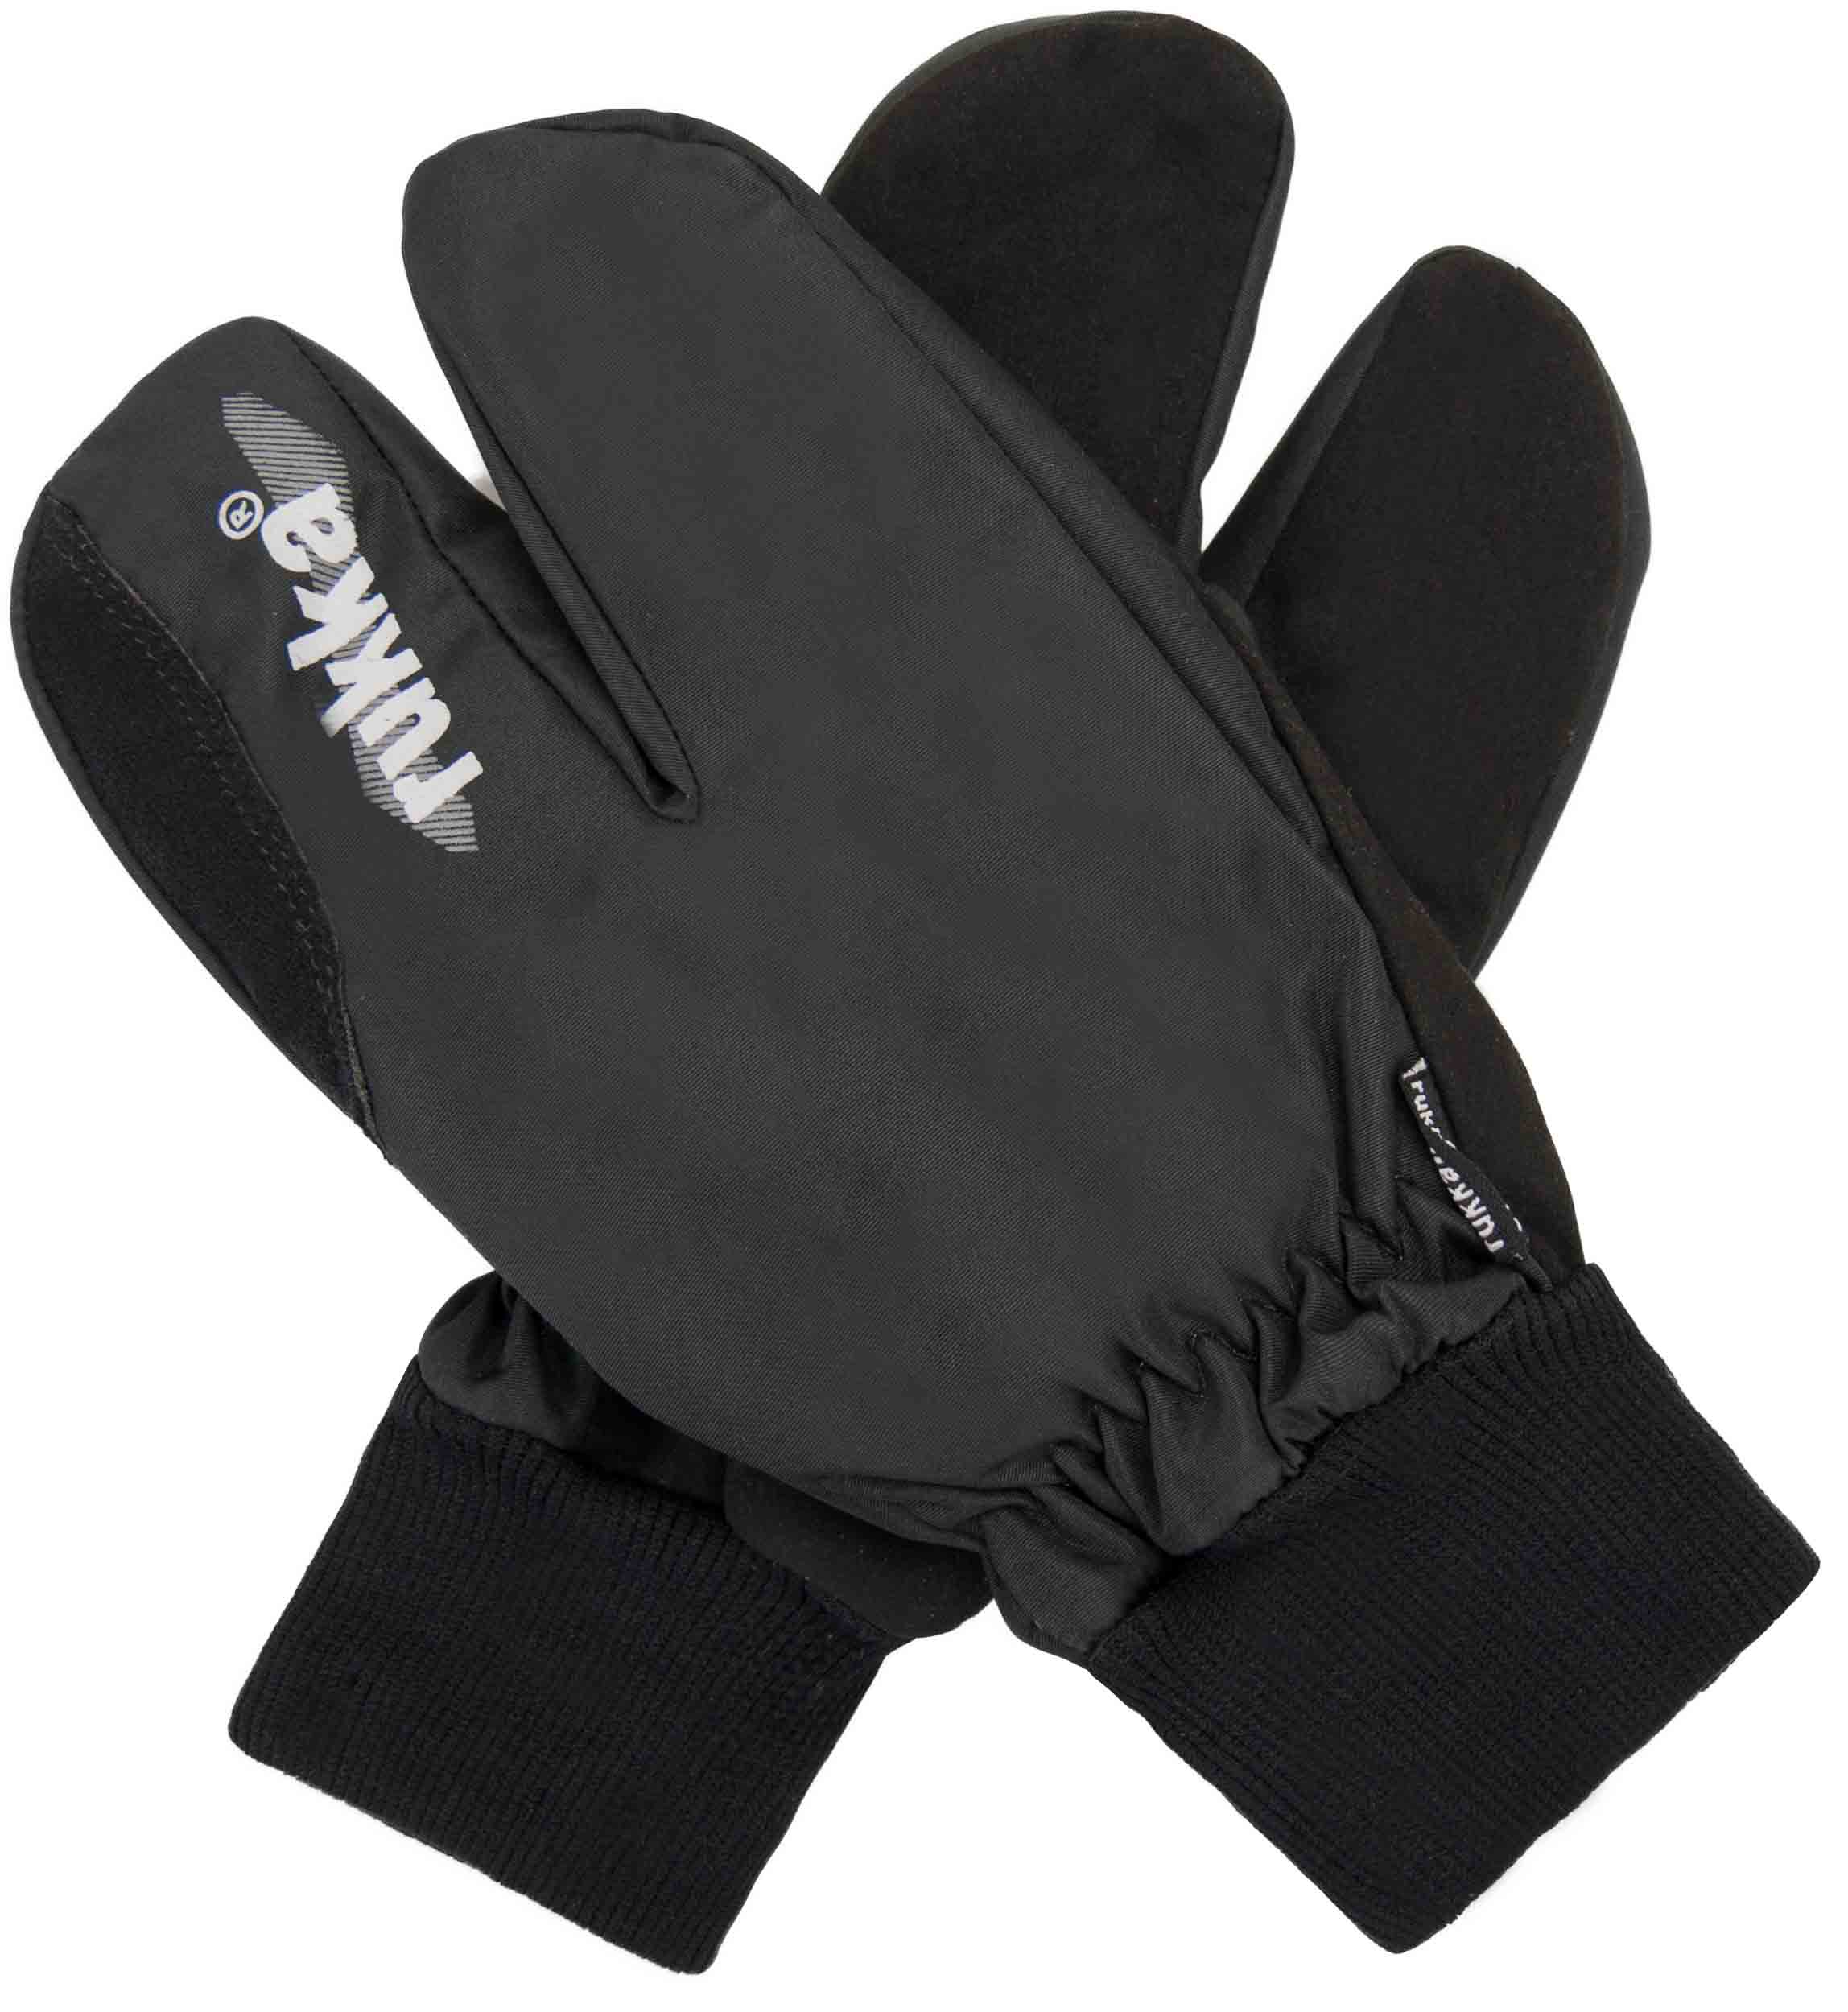 Rukavice Rukka Split Finger Gloves|8